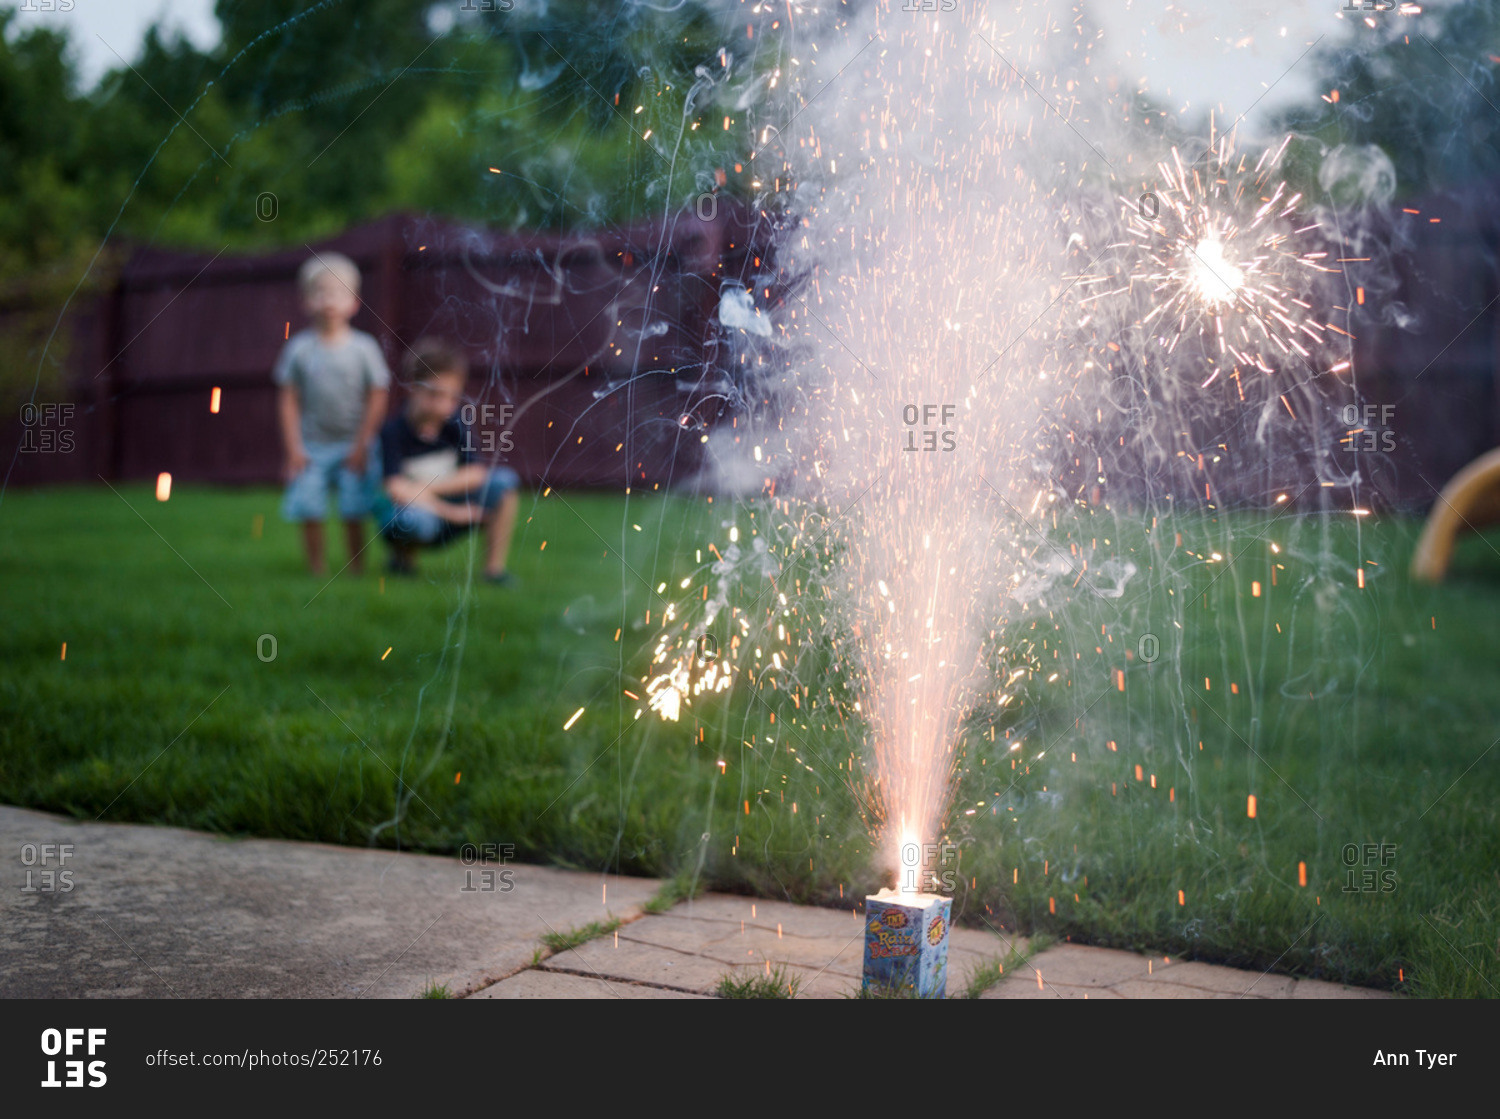 Fountain fireworks burning in a backyard